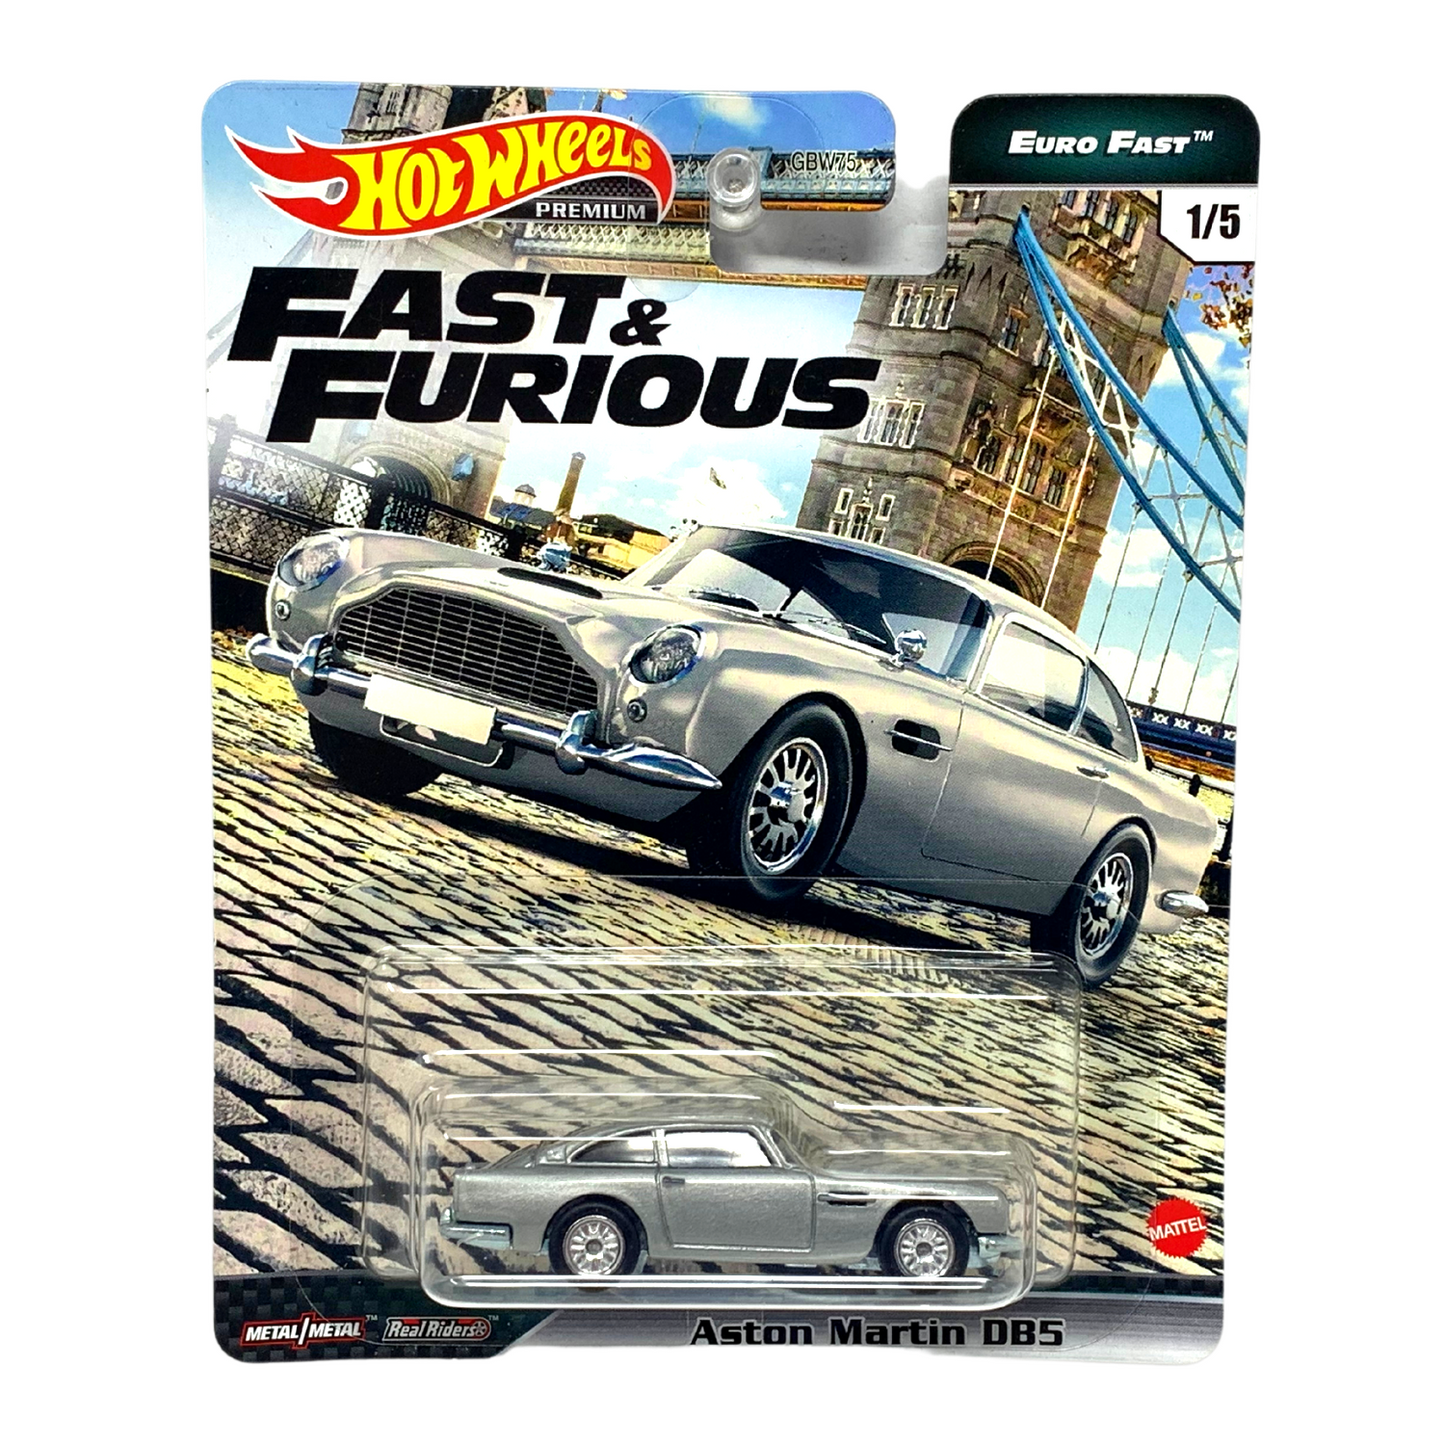 Hot Wheels Premium Euro Fast Fast & Furious Aston Martin DB5 1:64 Diecast